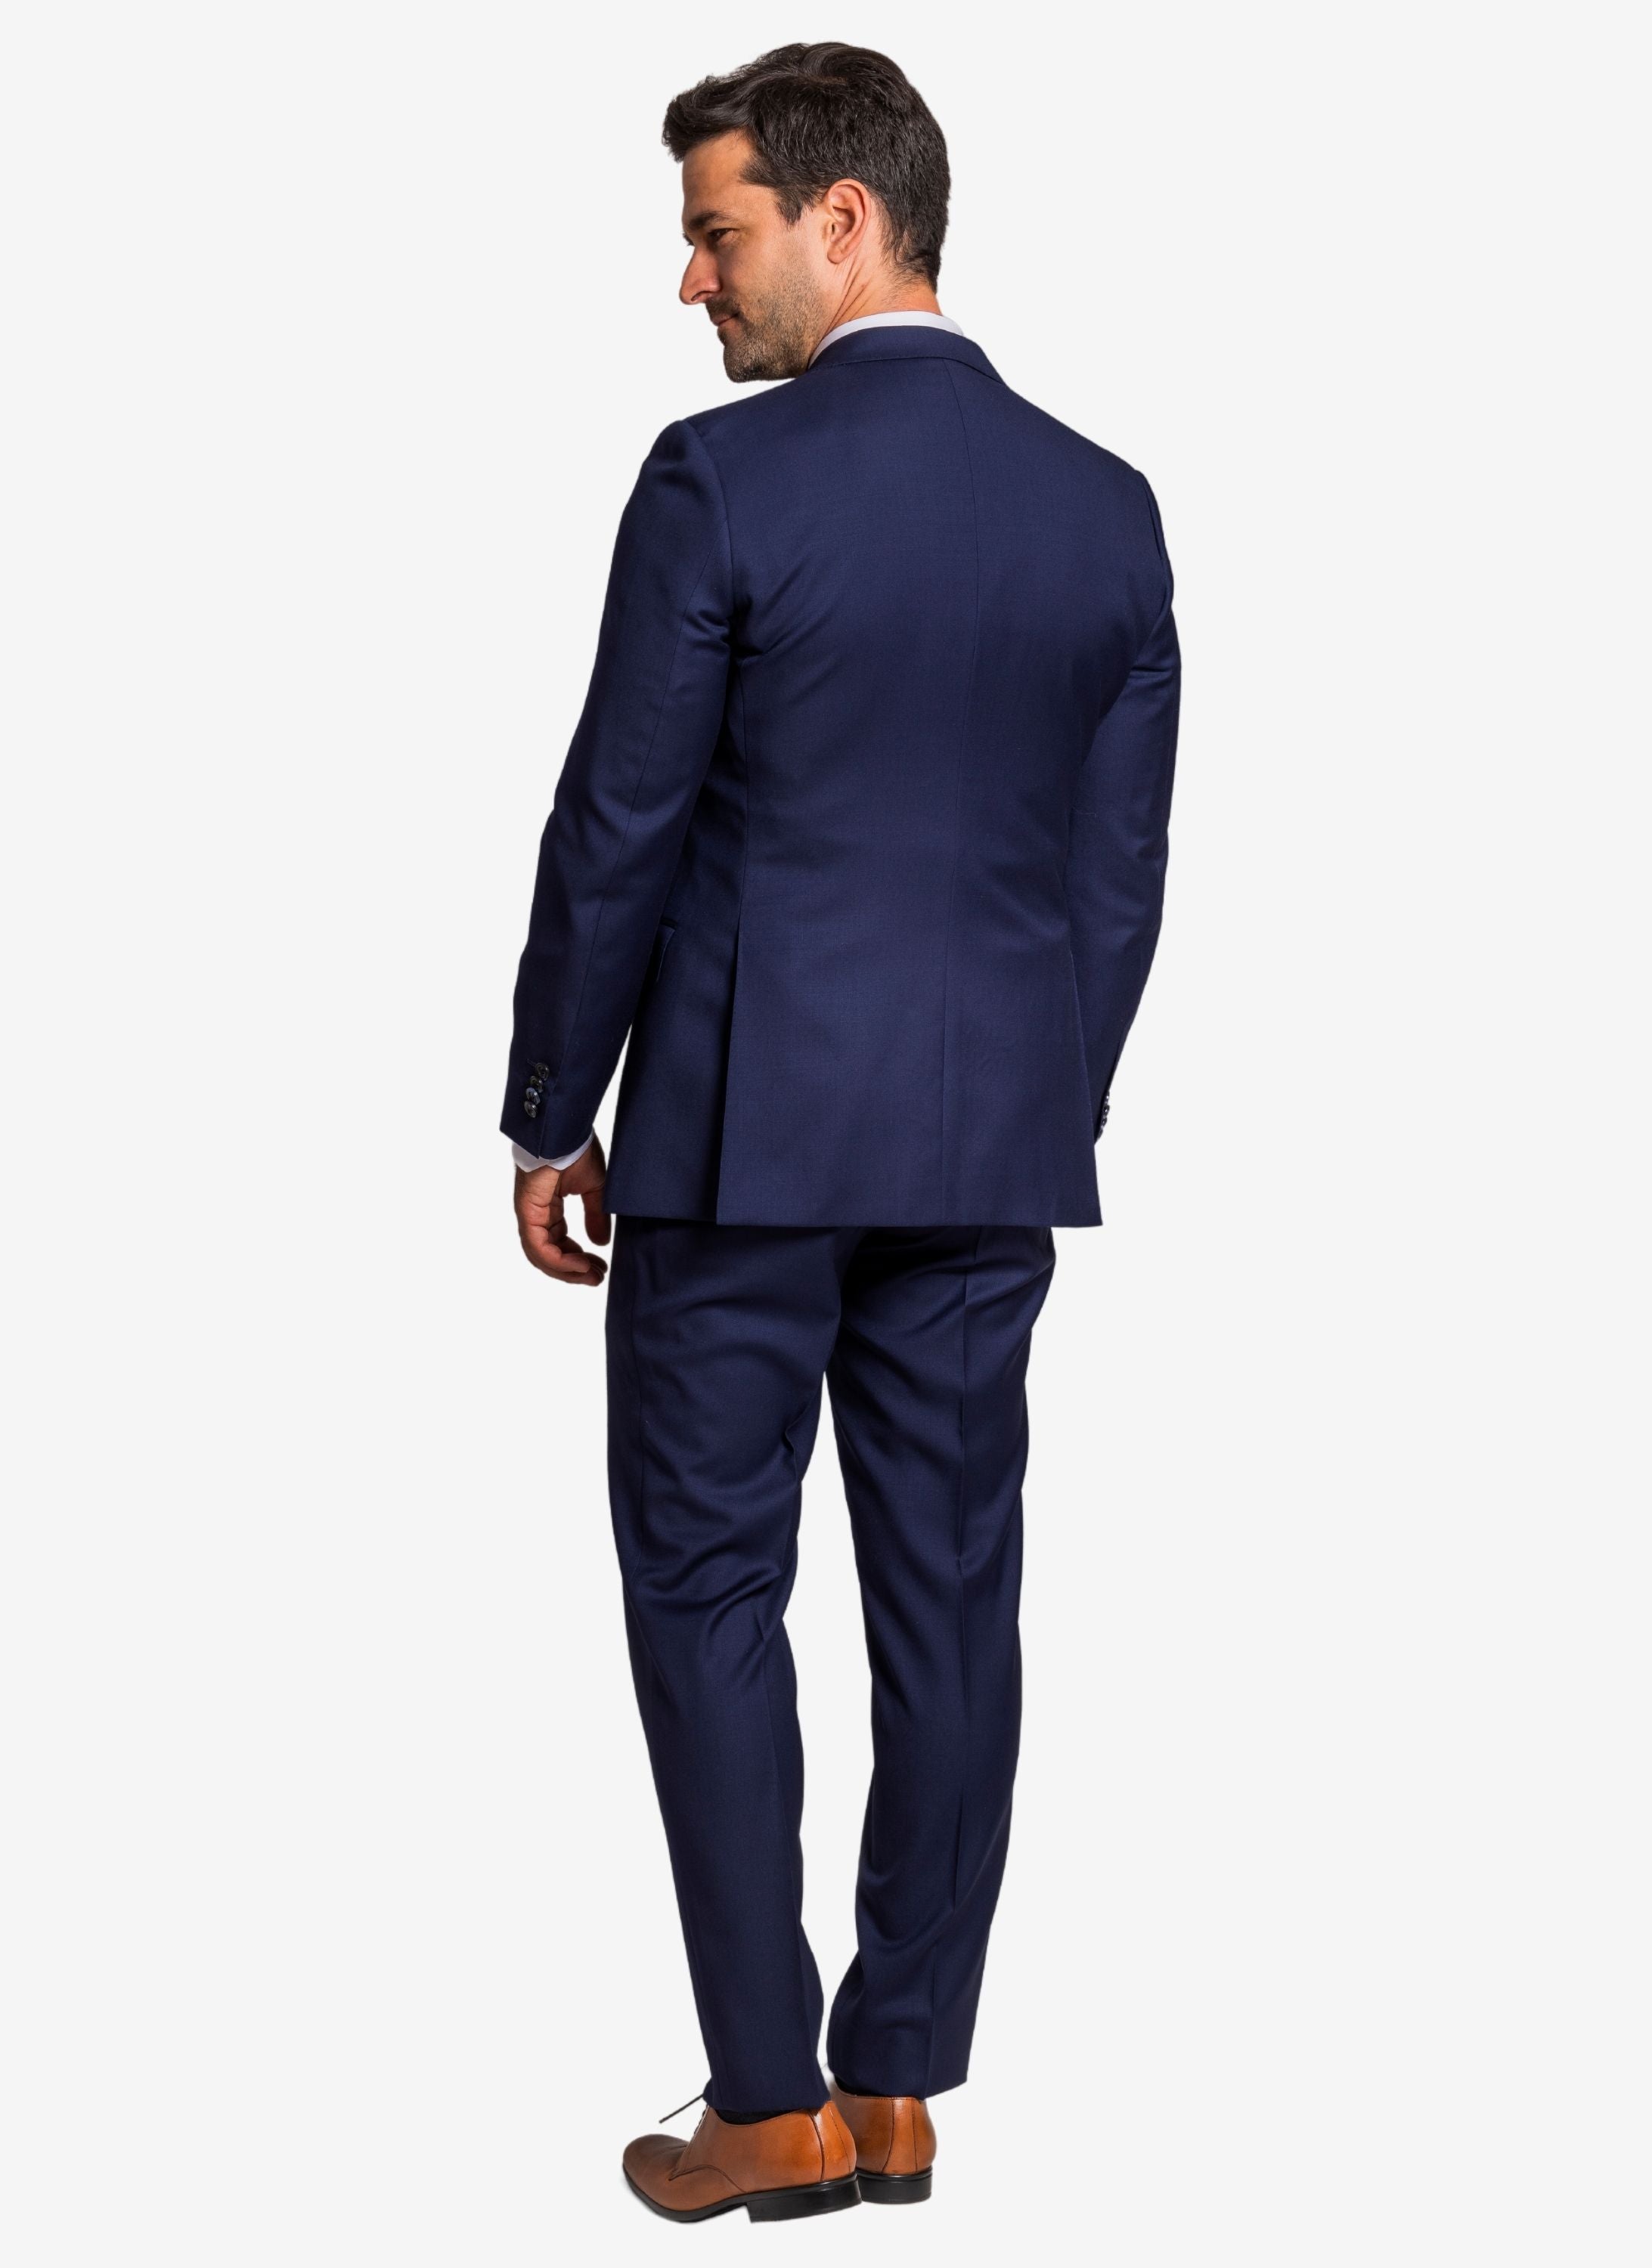 Blauer Anzug mit Cognac Lederschuhe von hinten